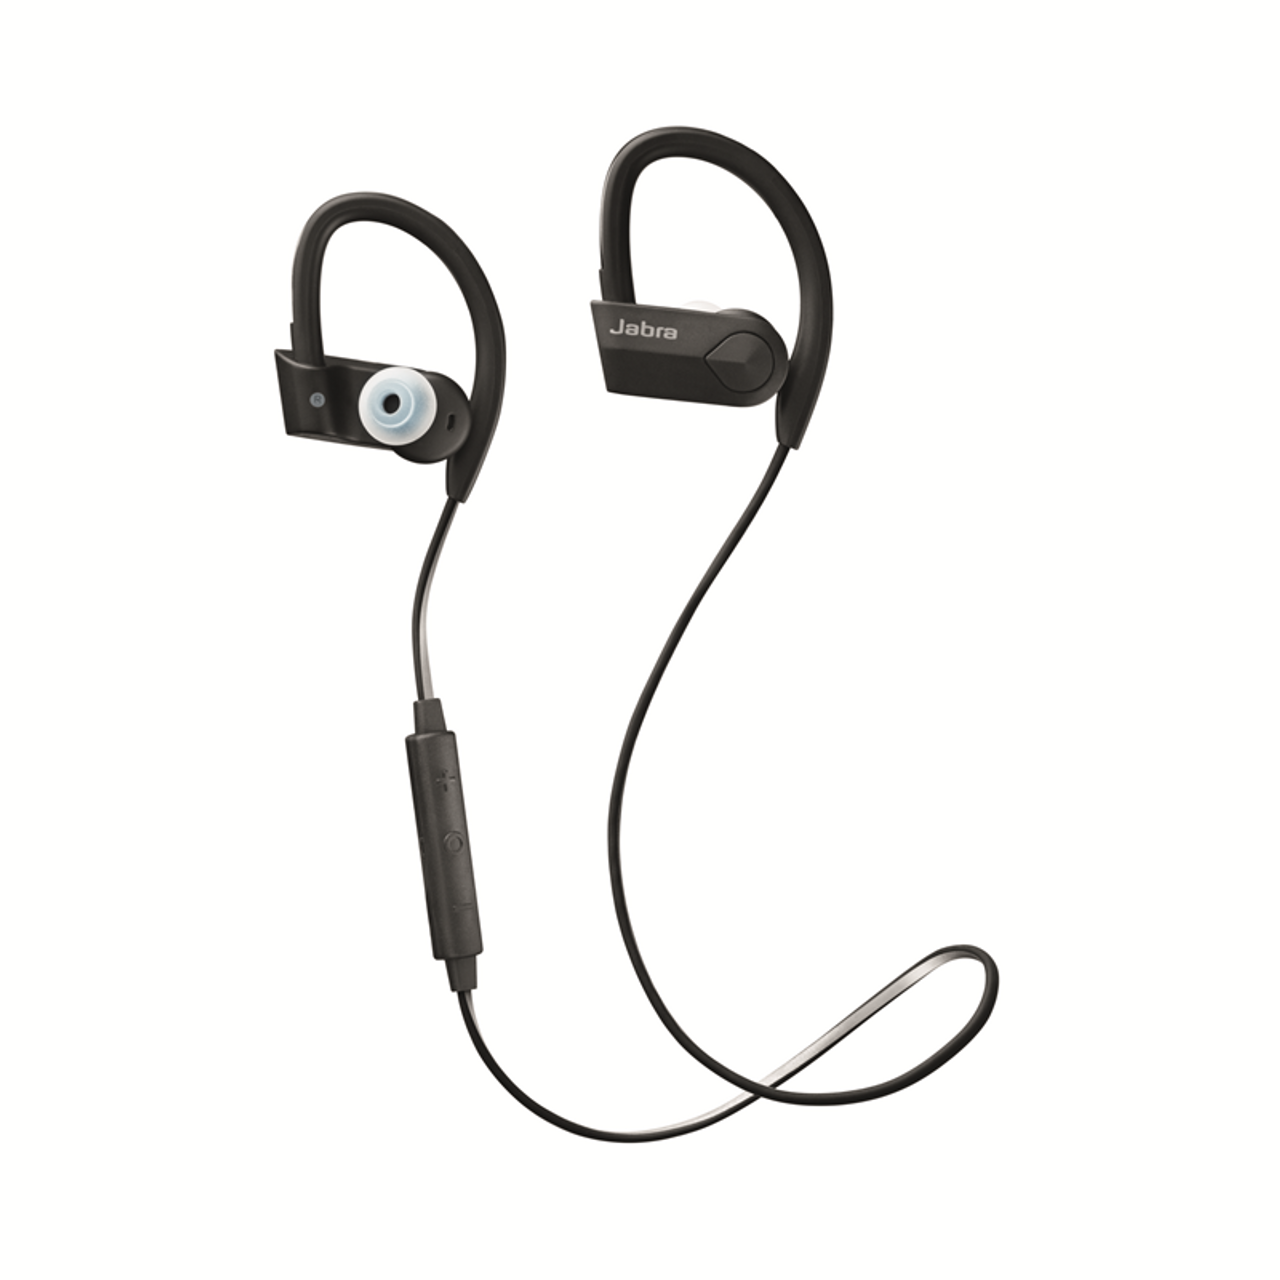 Weerkaatsing Medewerker humor Jabra Sports Pace headphones | Bluetooth Water Resistant Headphones EarBuds  with Rapid Charging Feature - 3yr Warranty | 100-97700003-02  (100-97700003-02)